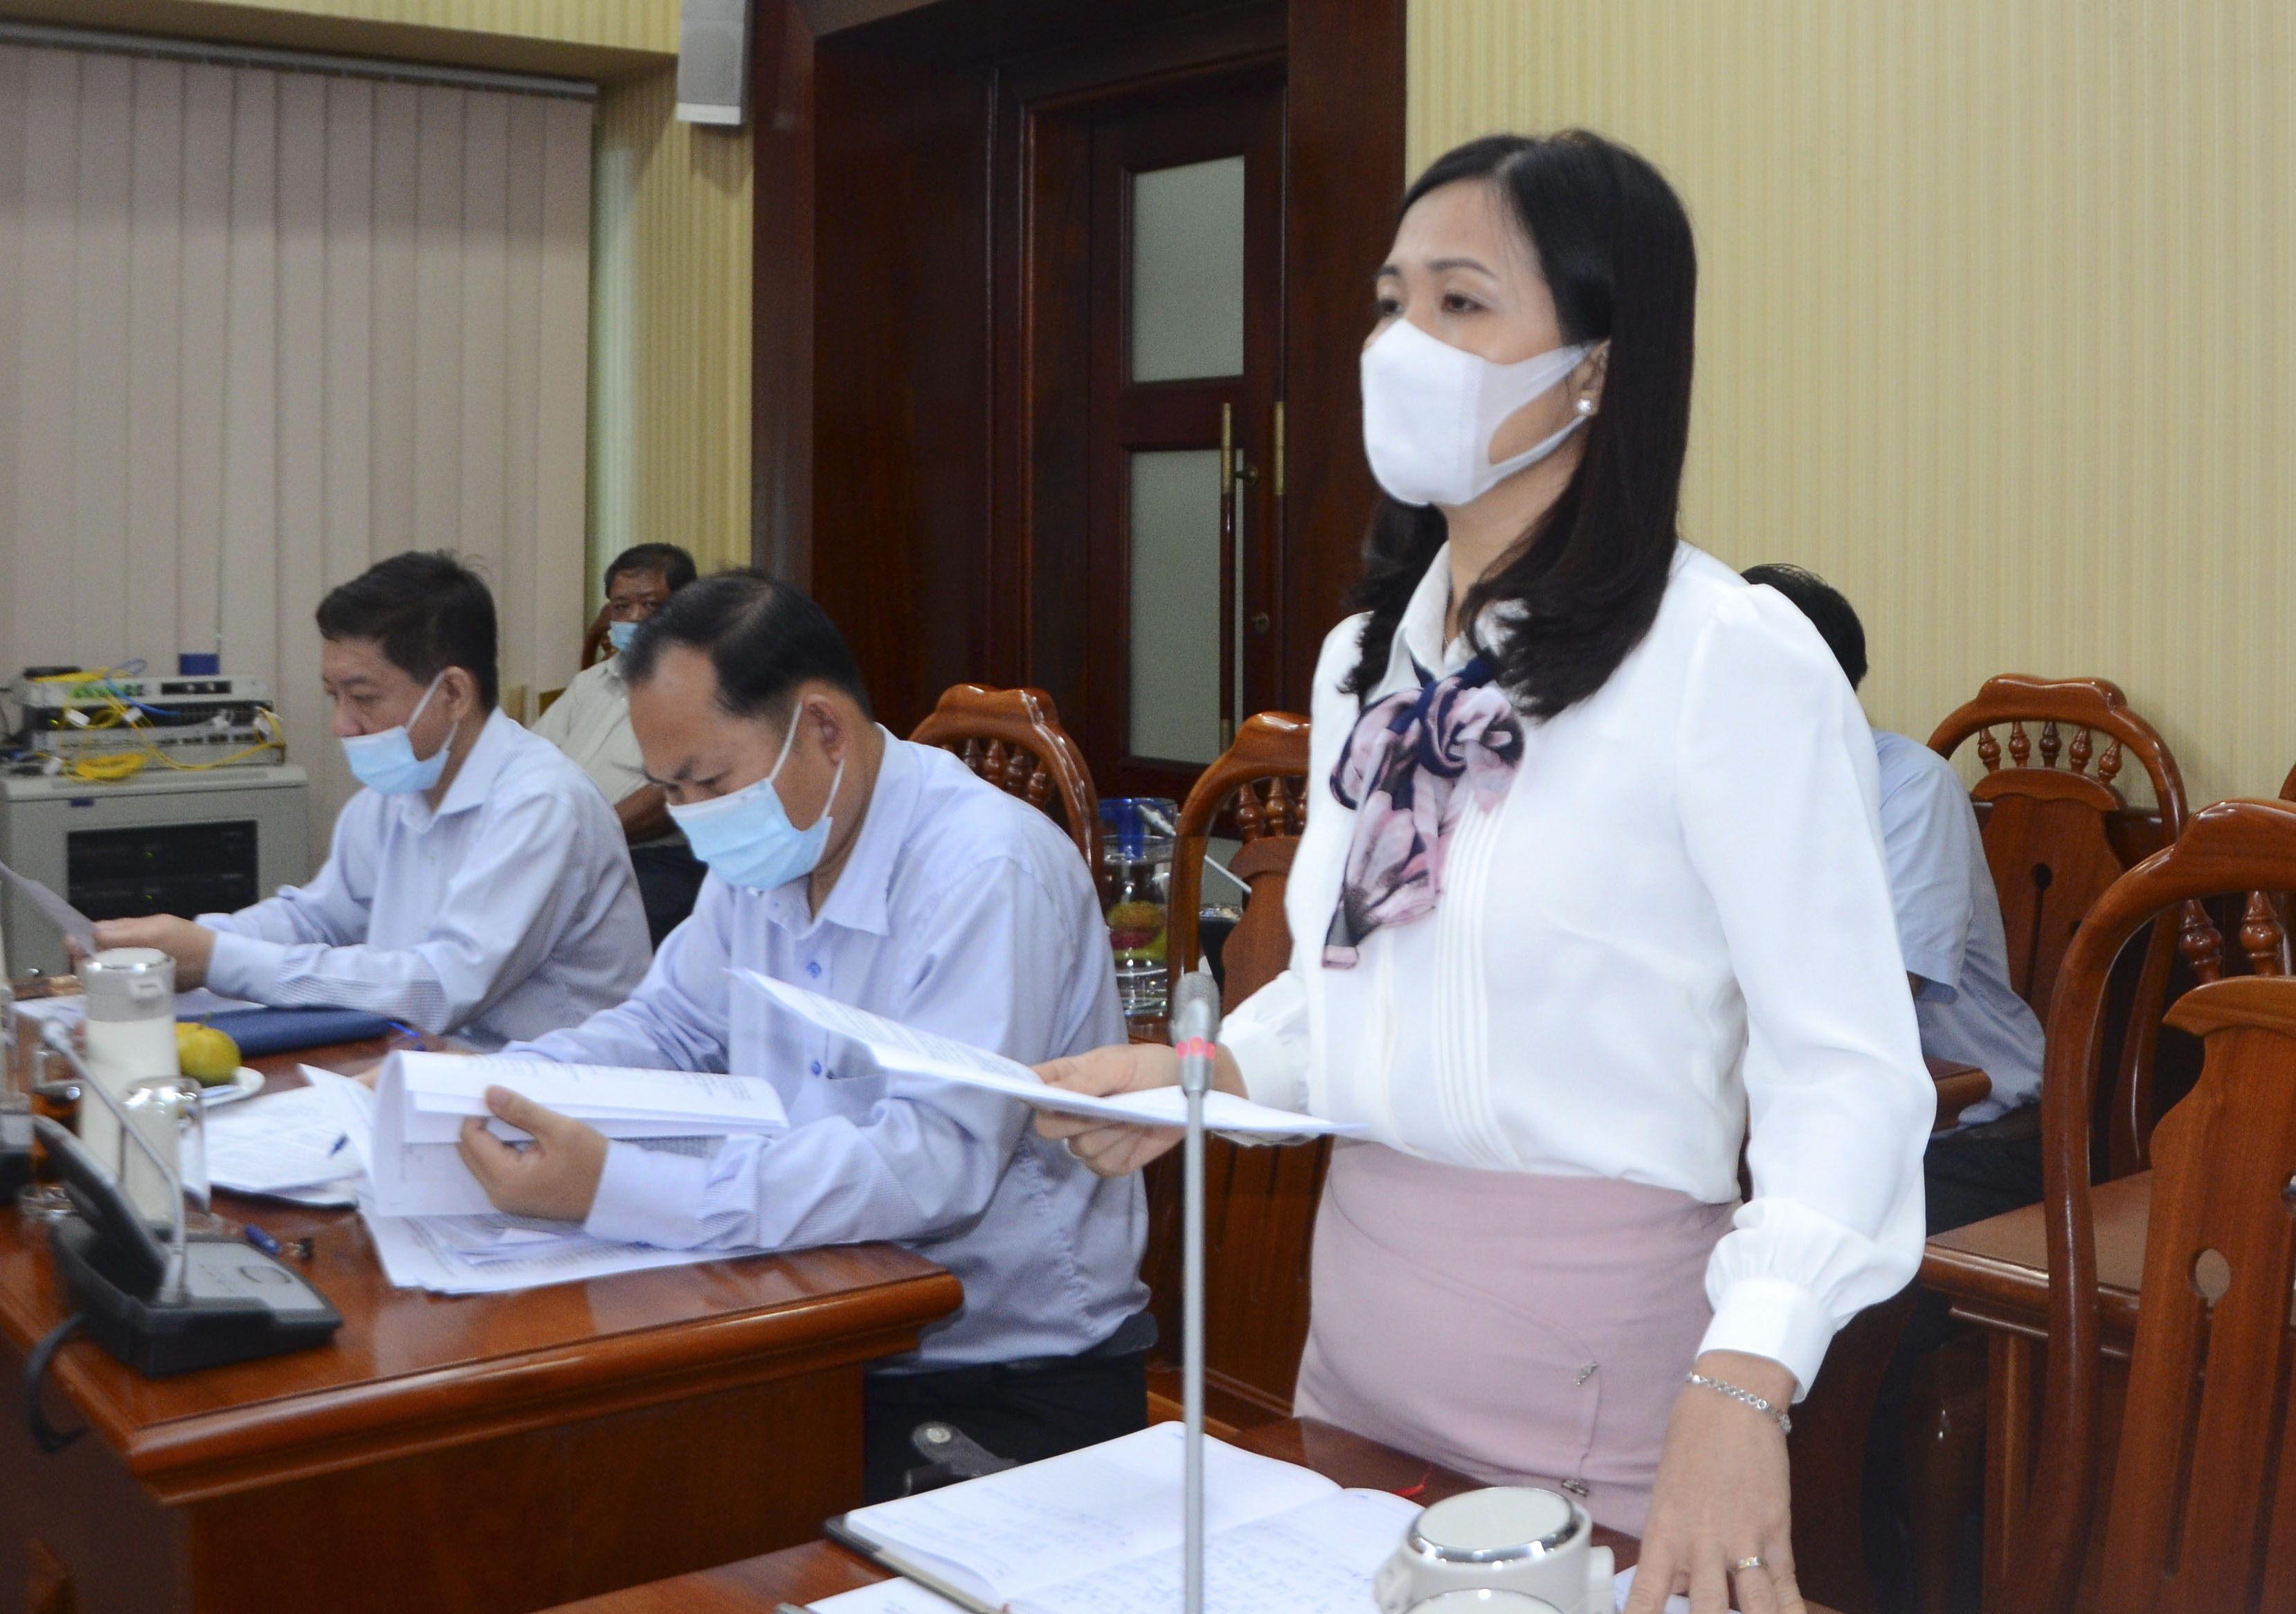 Bà Nguyễn Thị Huệ, Trưởng phòng Cải cách Hành chính, Sở Nội vụ đề nghị các sở, ngành, địa phương tiếp tục rà soát, cắt giảm thời gian giải quyết hồ sơ TTHC cho người dân và DN.